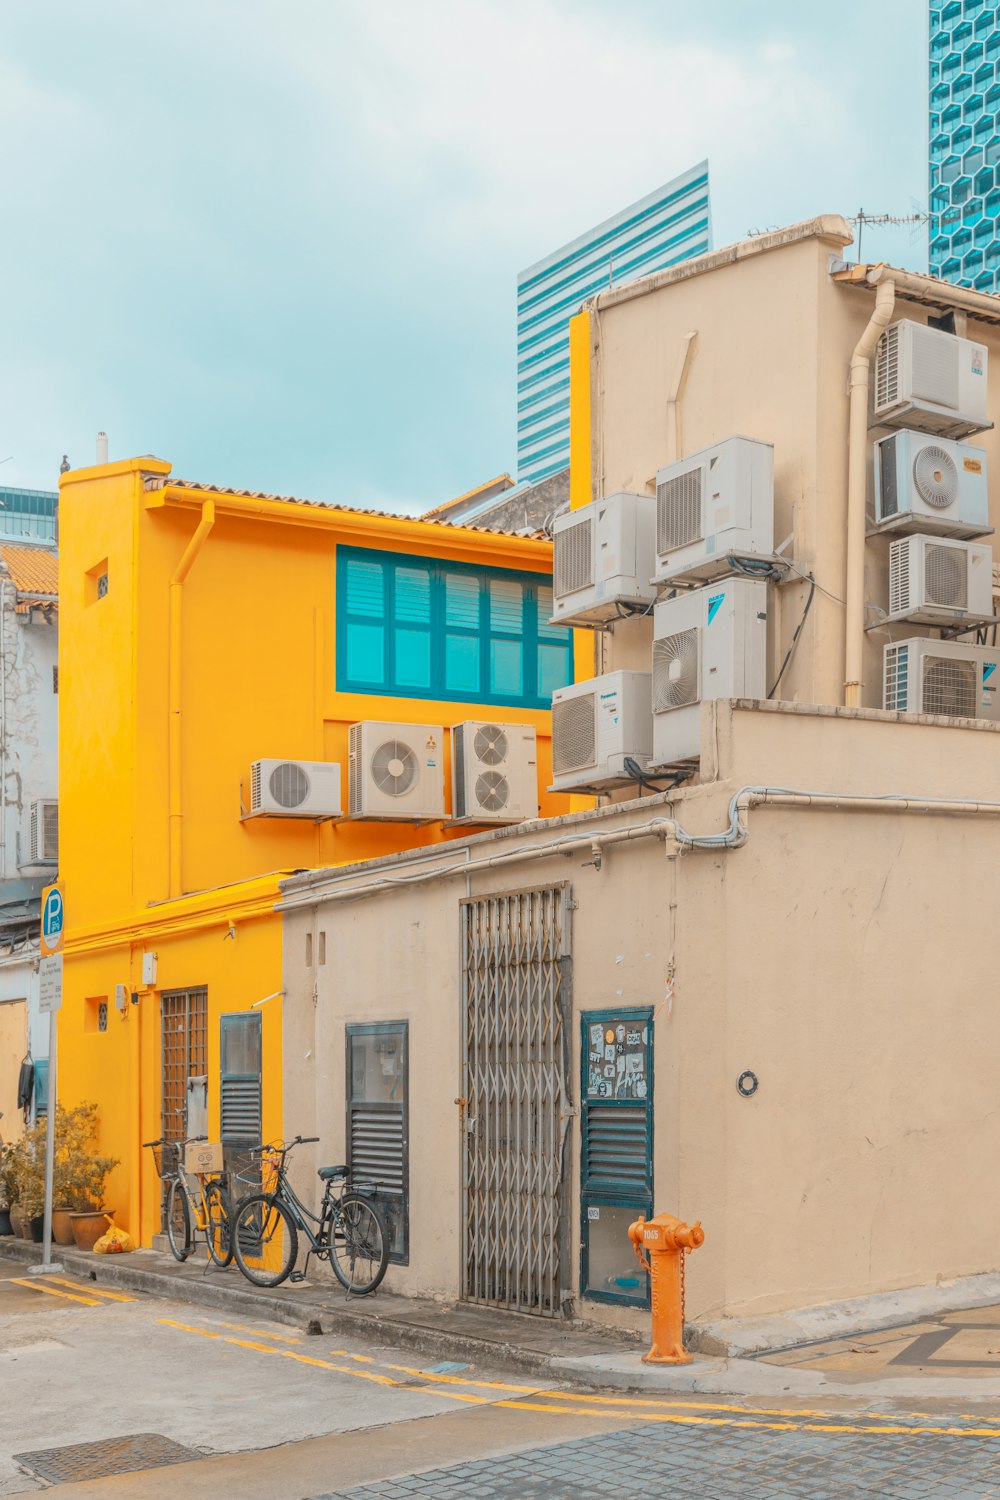 Casa de concreto bege e amarelo